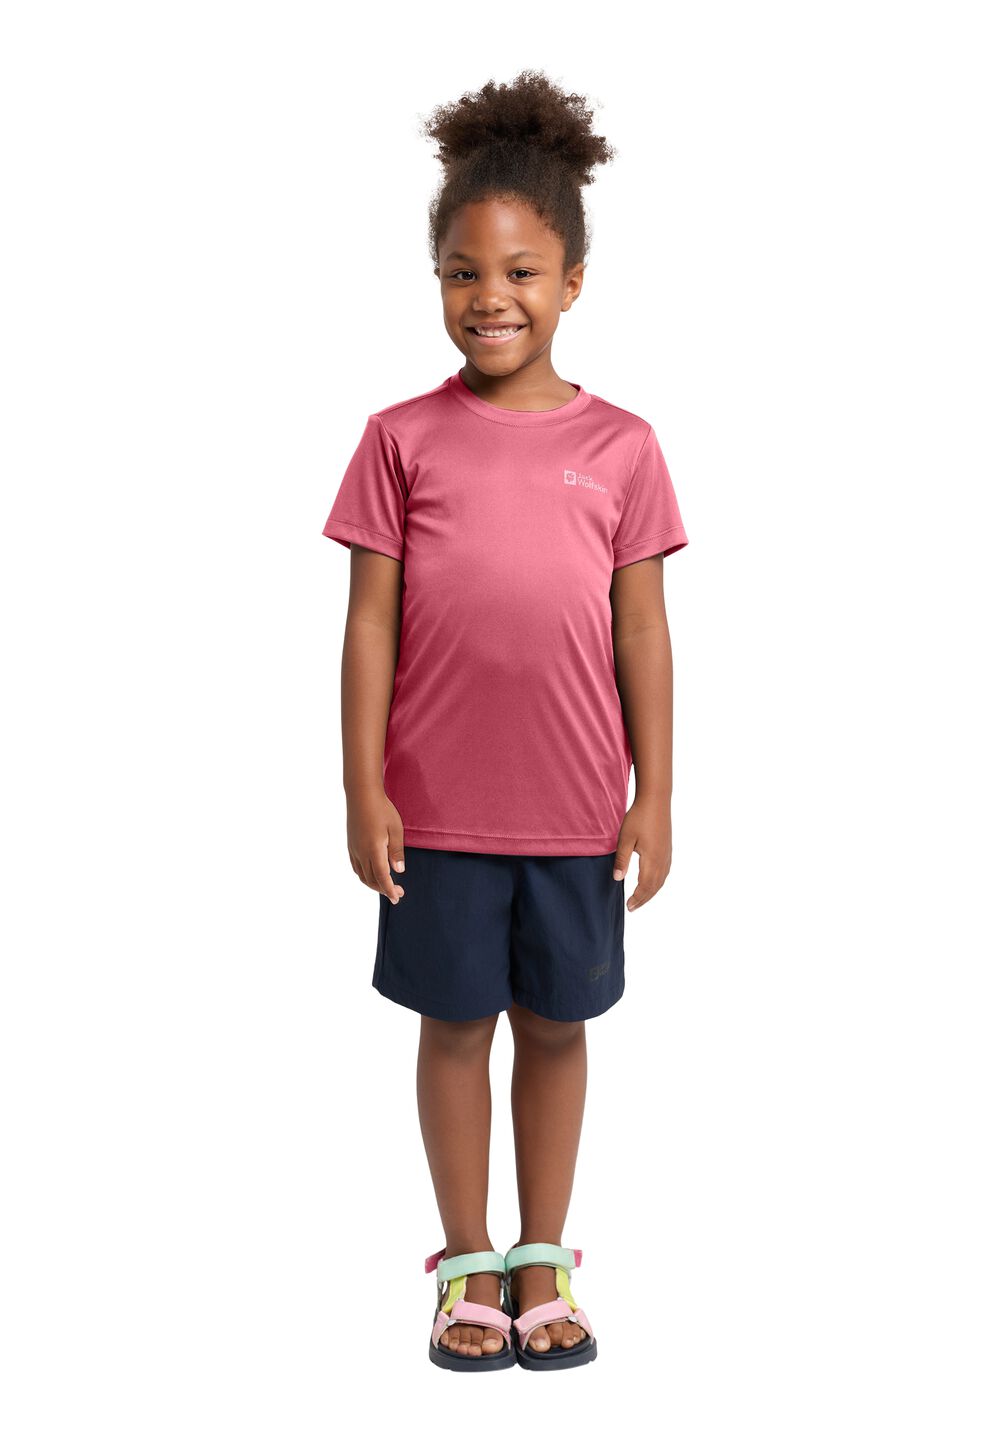 Jack Wolfskin Active Solid T-Shirt Kids Functioneel shirt Kinderen 128 soft pink soft pink